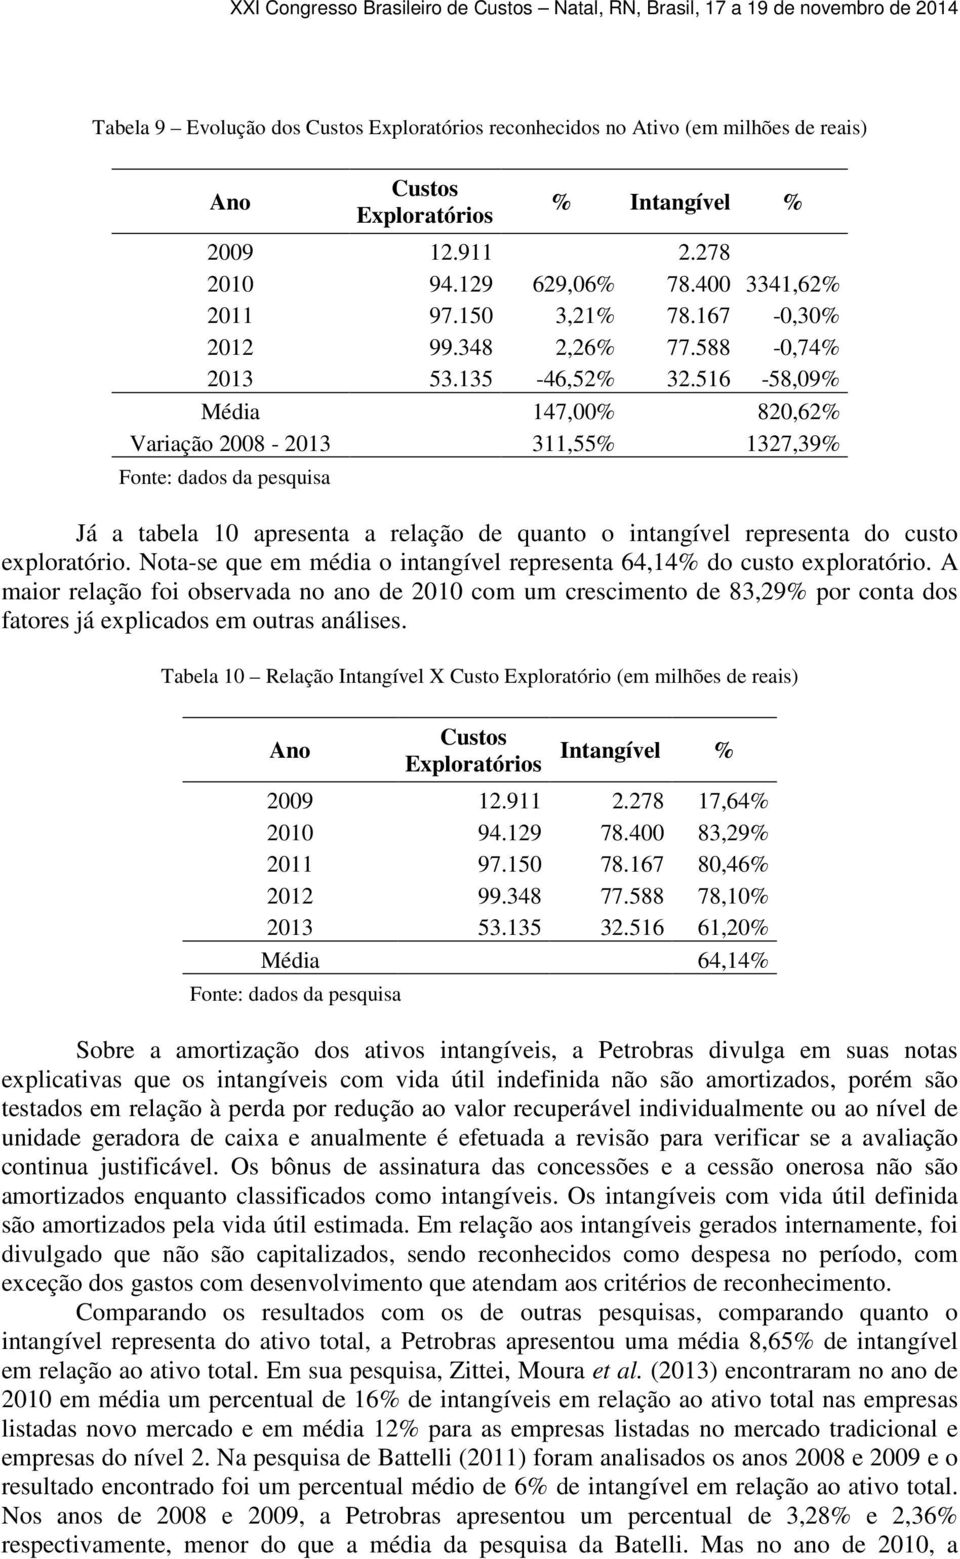 516-58,09% Média 147,00% 820,62% Variação 2008-2013 311,55% 1327,39% Já a tabela 10 apresenta a relação de quanto o intangível representa do custo exploratório.